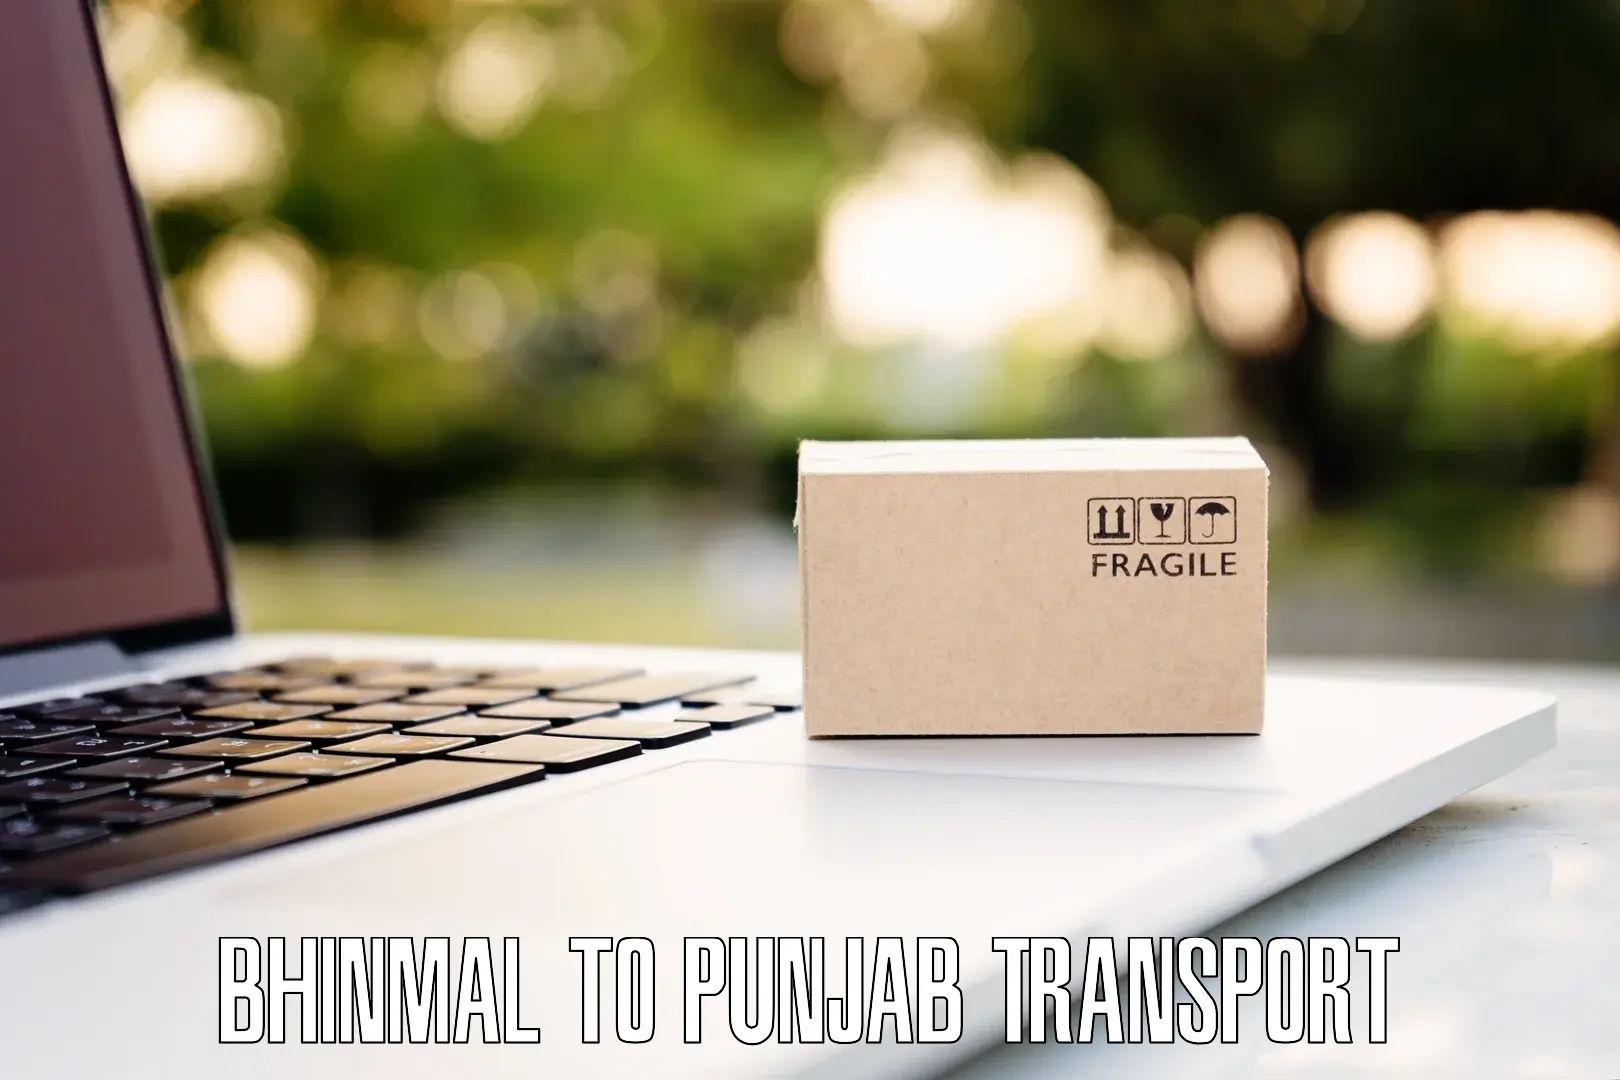 Online transport service Bhinmal to Punjab